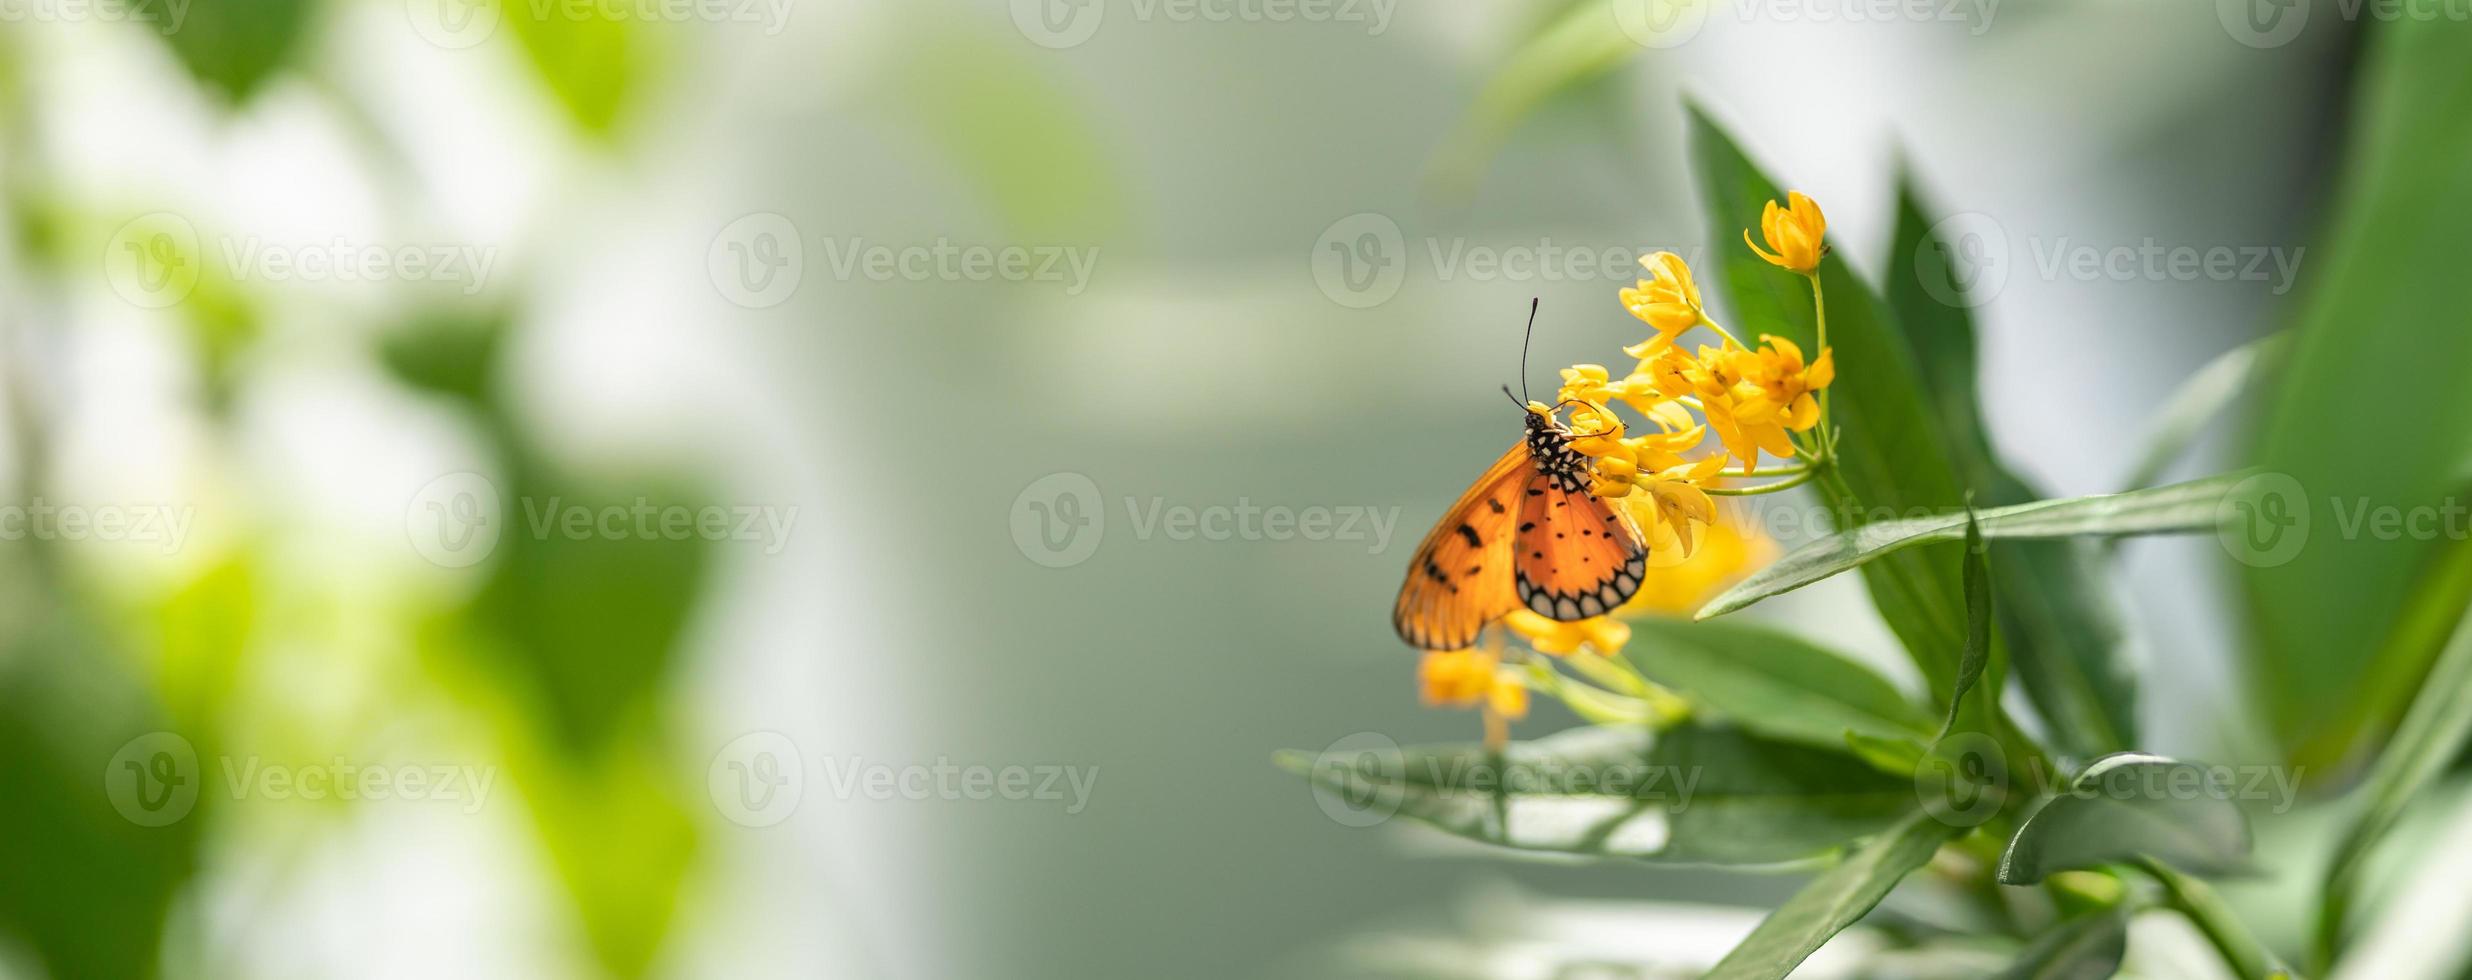 bellissimo arancia farfalla su giallo fiore con verde foglia natura sfocato sfondo nel giardino con copia spazio utilizzando come sfondo insetto, naturale paesaggio, ecologia, fresco copertina pagina concetto. foto